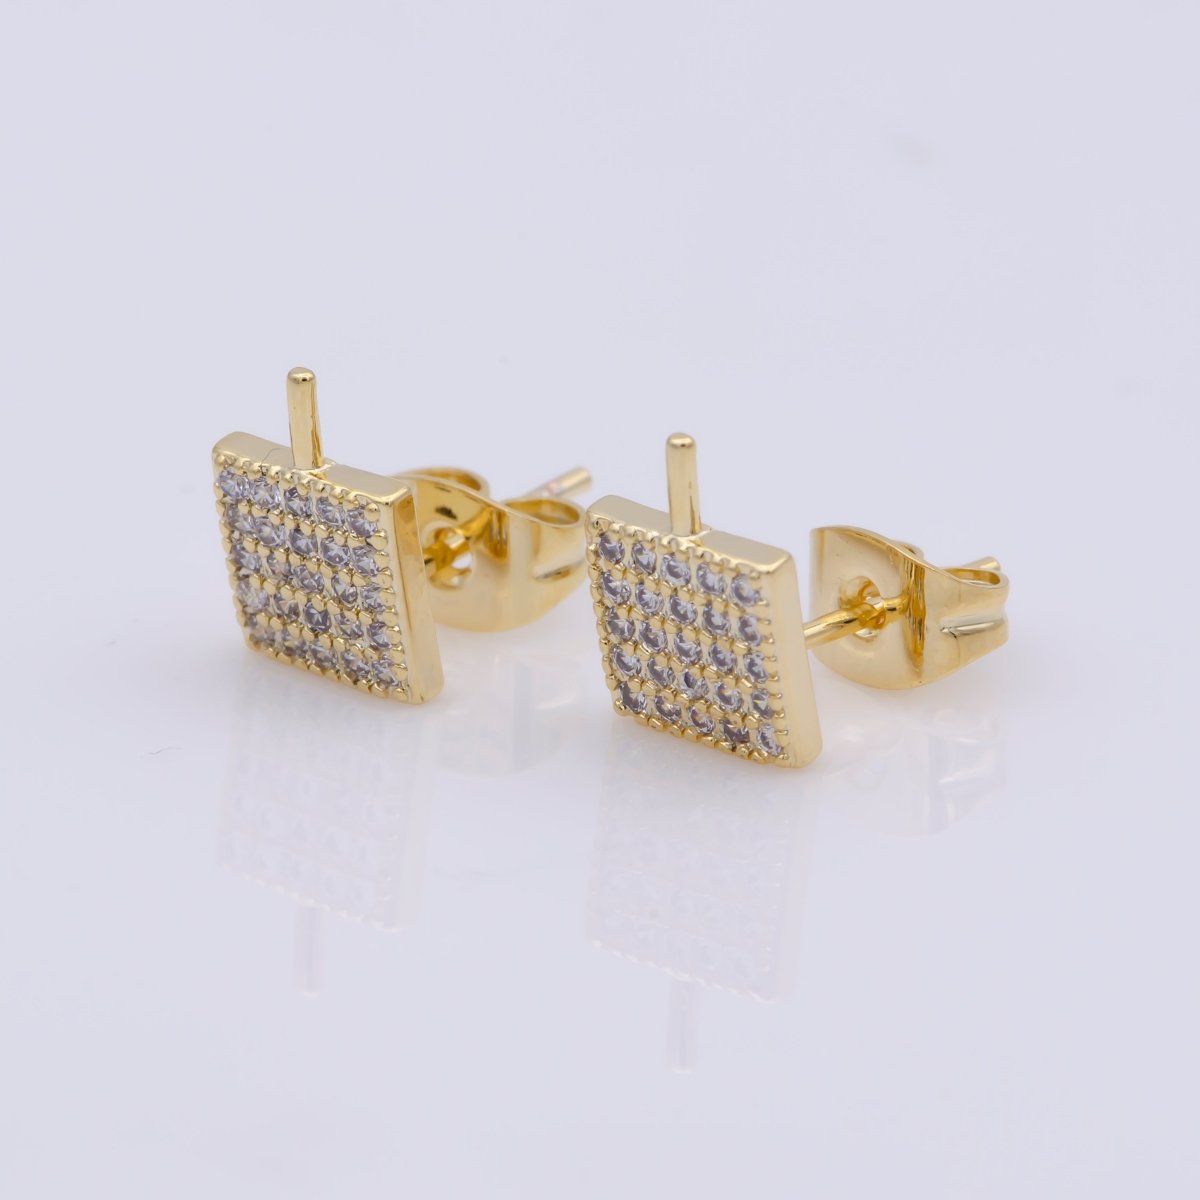 24k Vermeil Gold Earrings, Tiny Stud Earring, Square Earring, Gift for Her, Earrings for Women, Everyday Wear Earrings, Cubic Zirconia Jewel, K-748 - DLUXCA